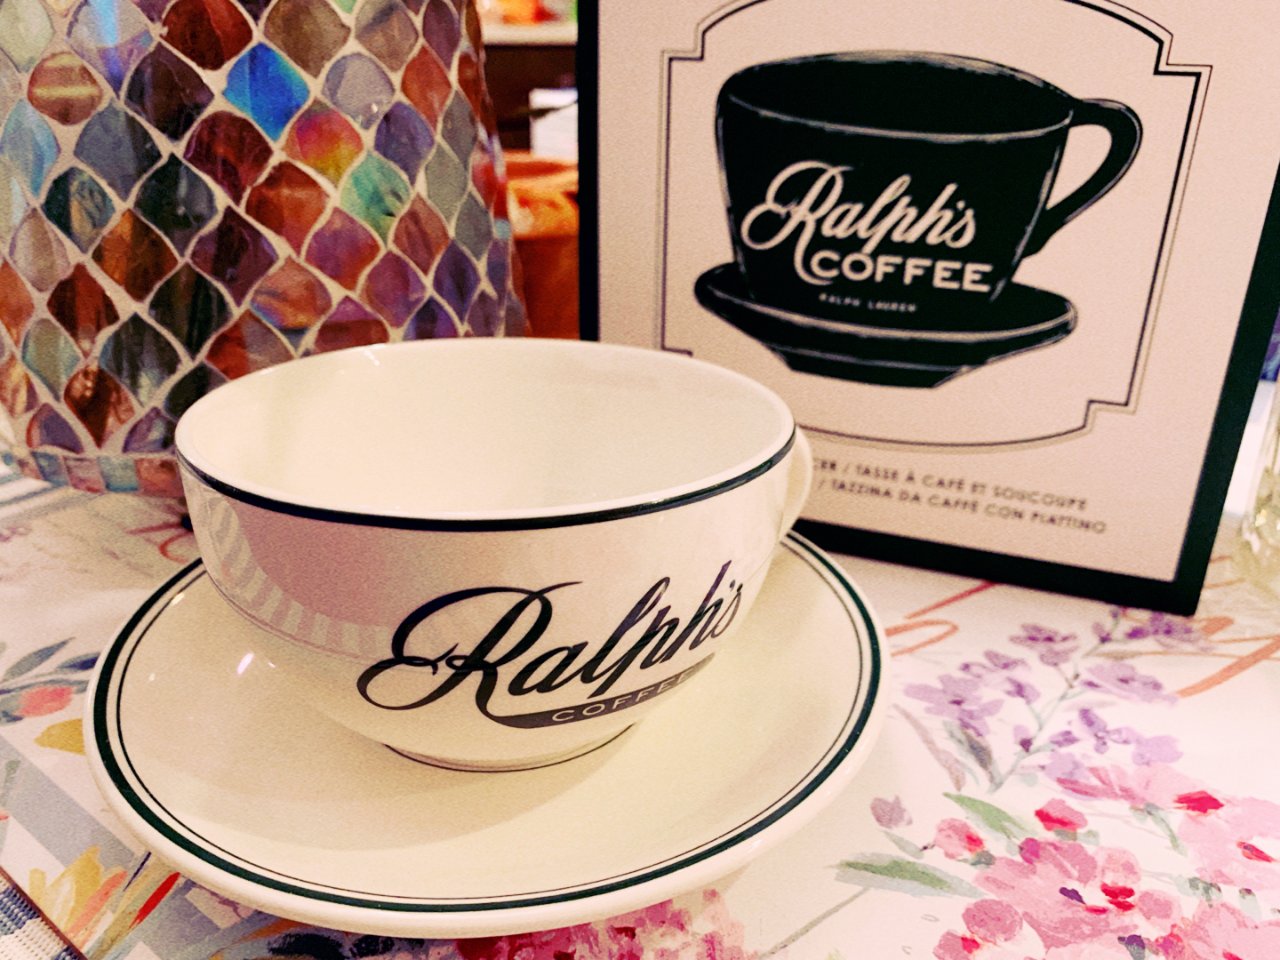 Ralph's coffee 杯碟套装...